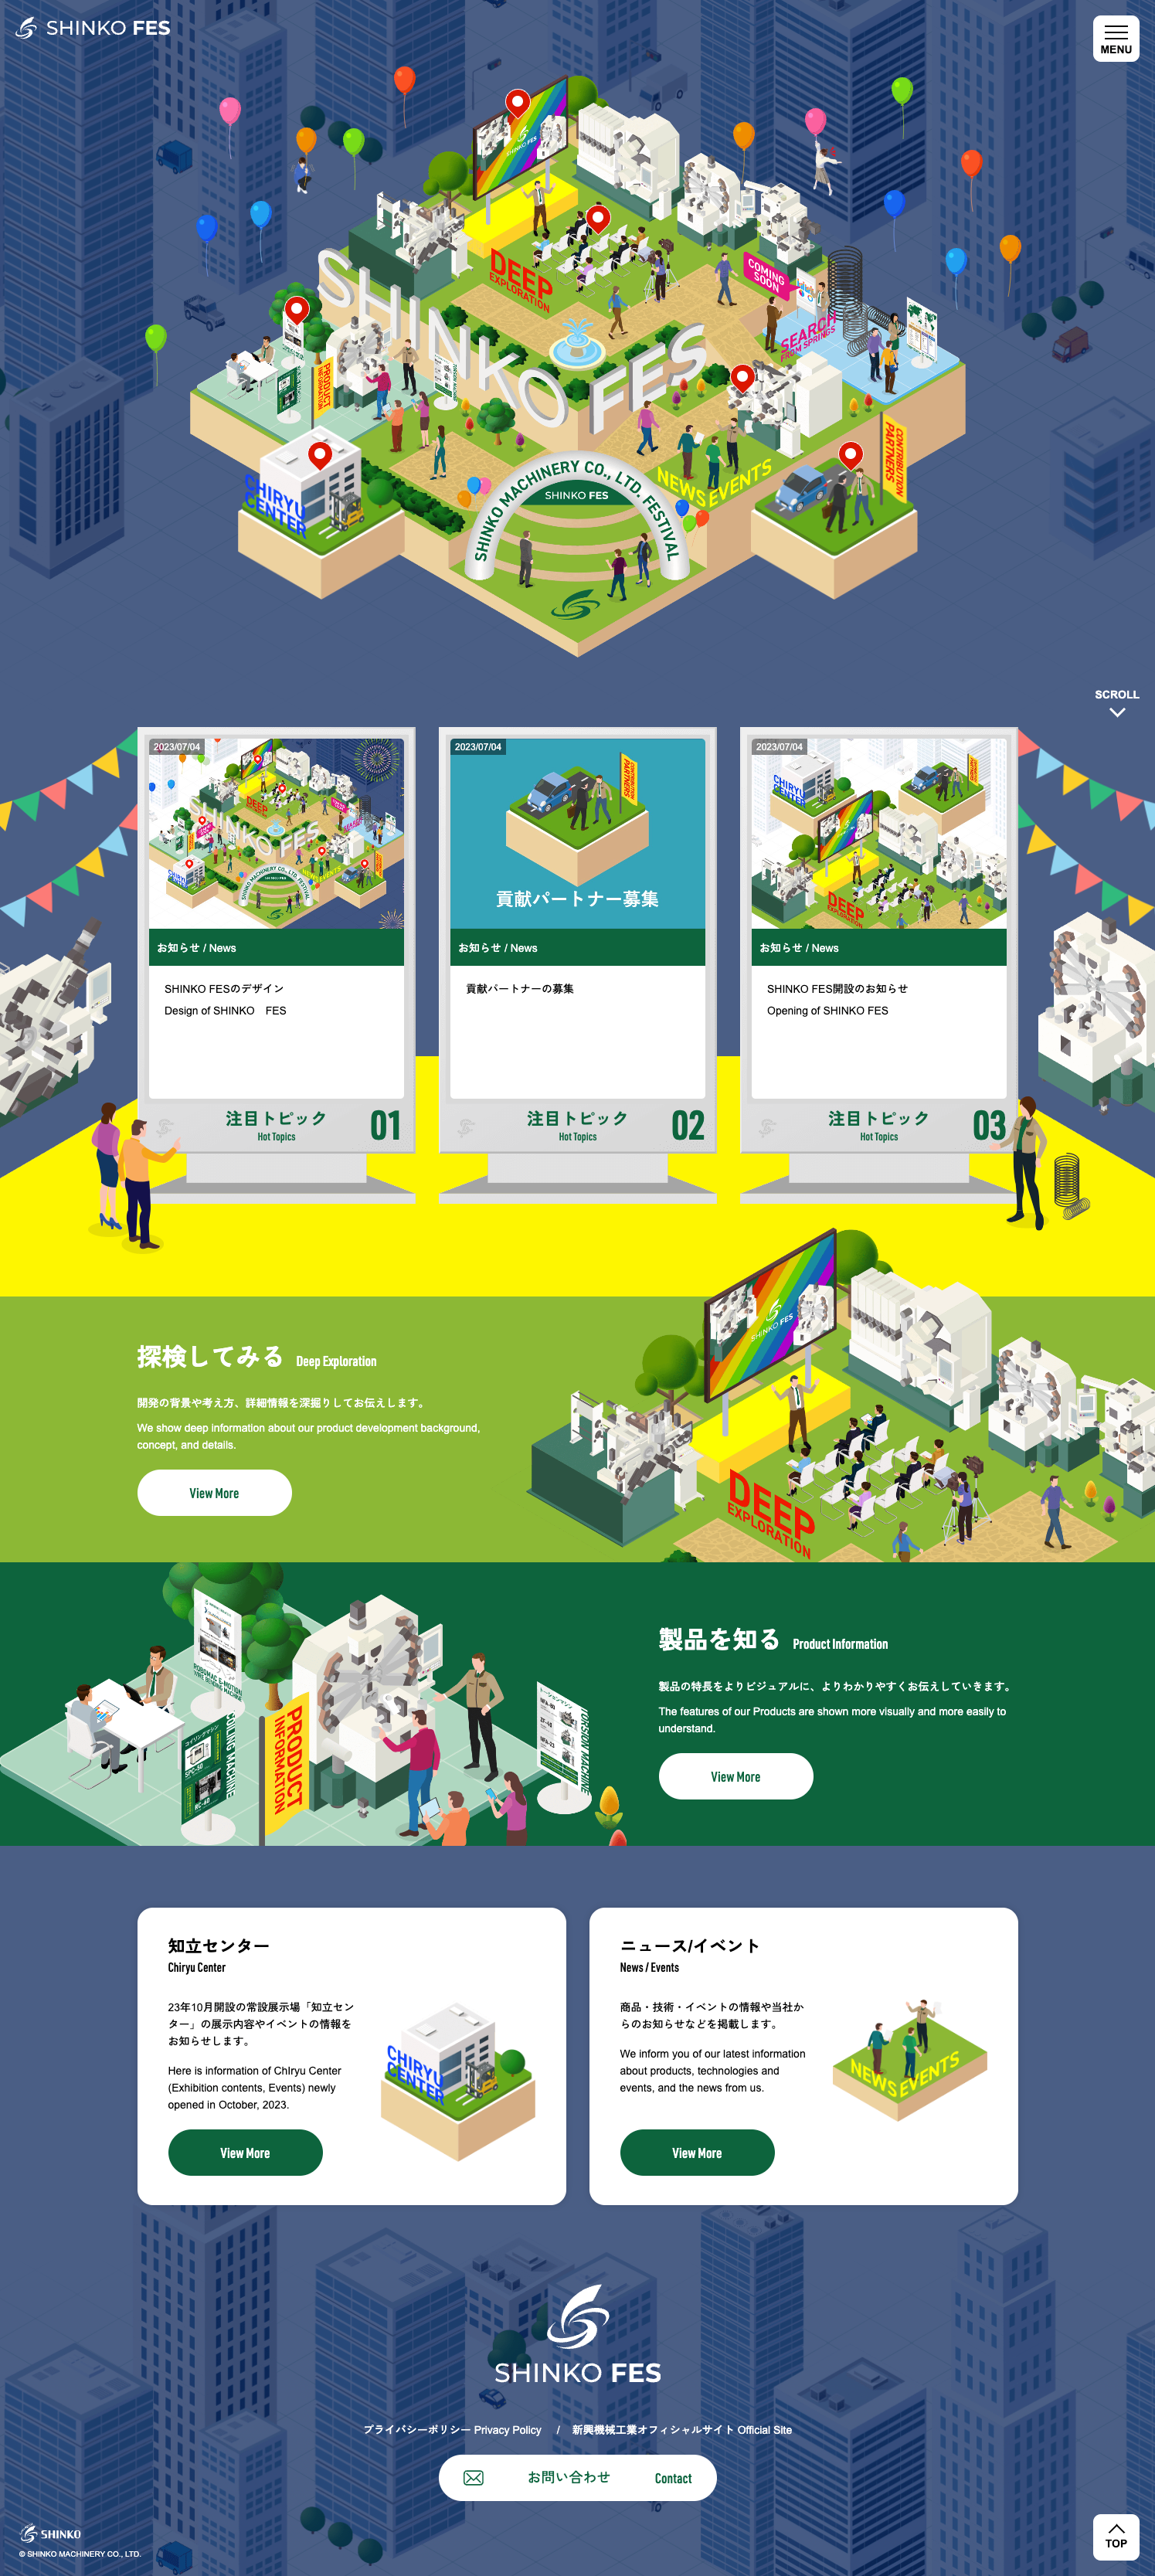 SHINKO FESトップページ：大阪のホームページ制作会社アップポイントの制作例